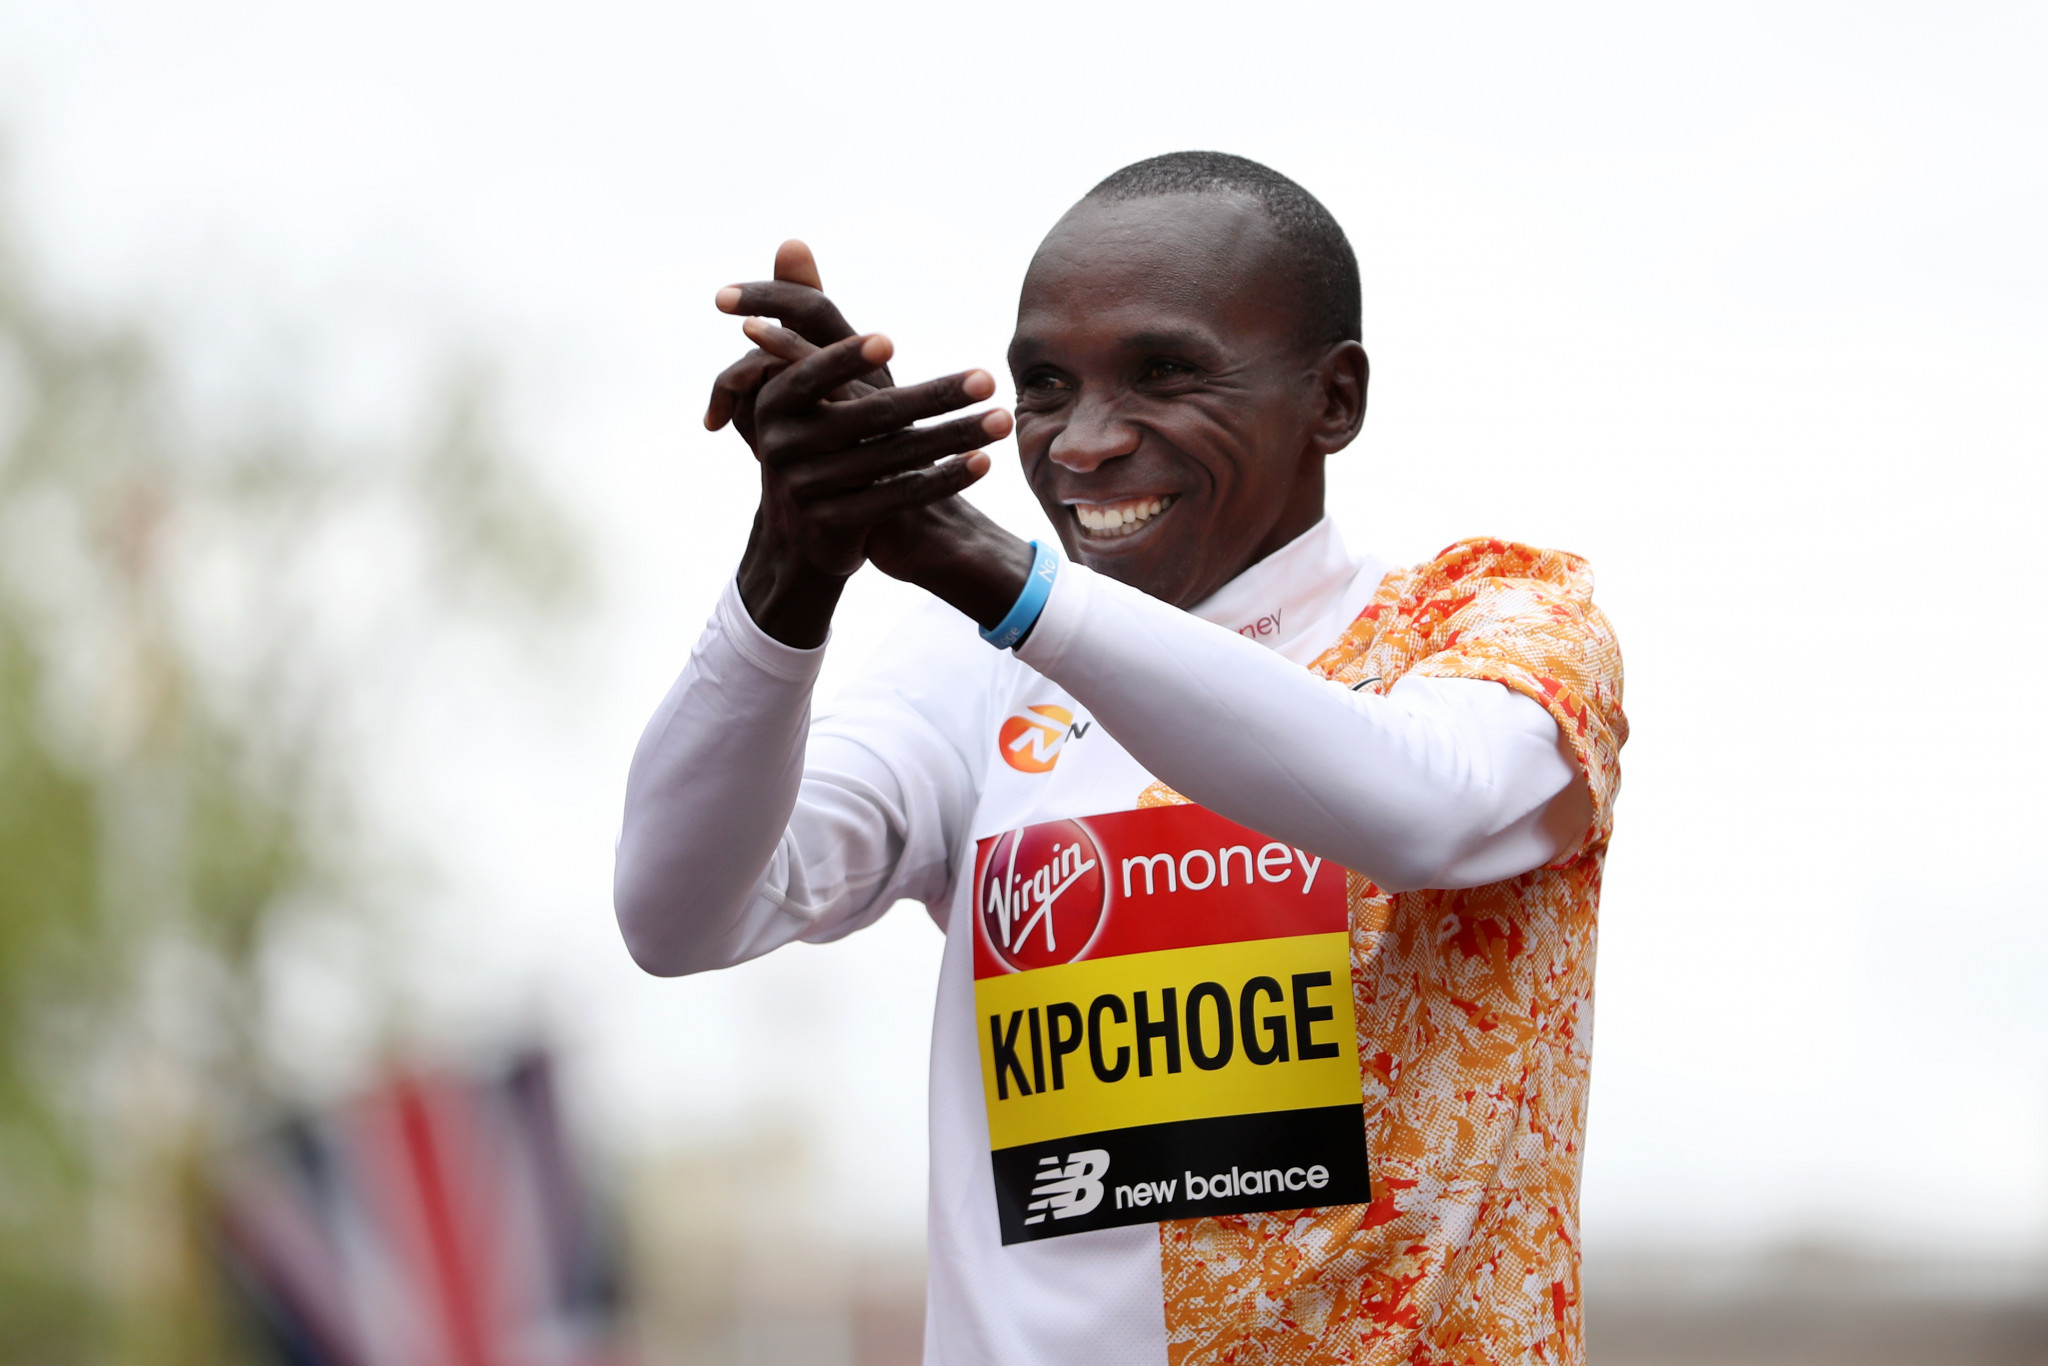 Kipchoge-Bekele showdown on the cards as London Marathon fields confirmed